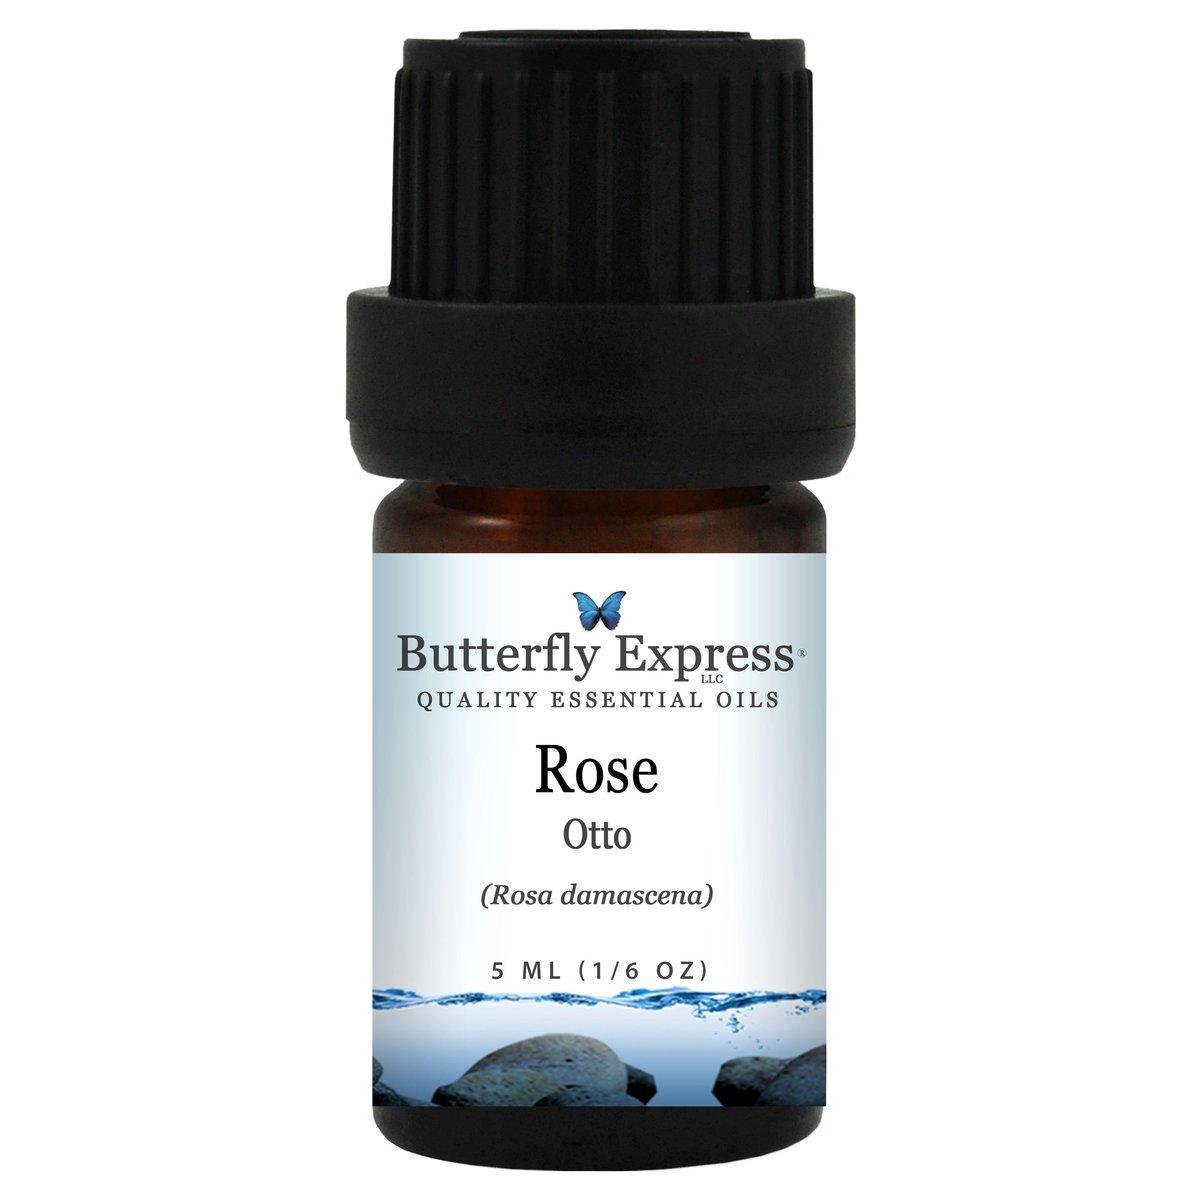 Rose Otto essential oils